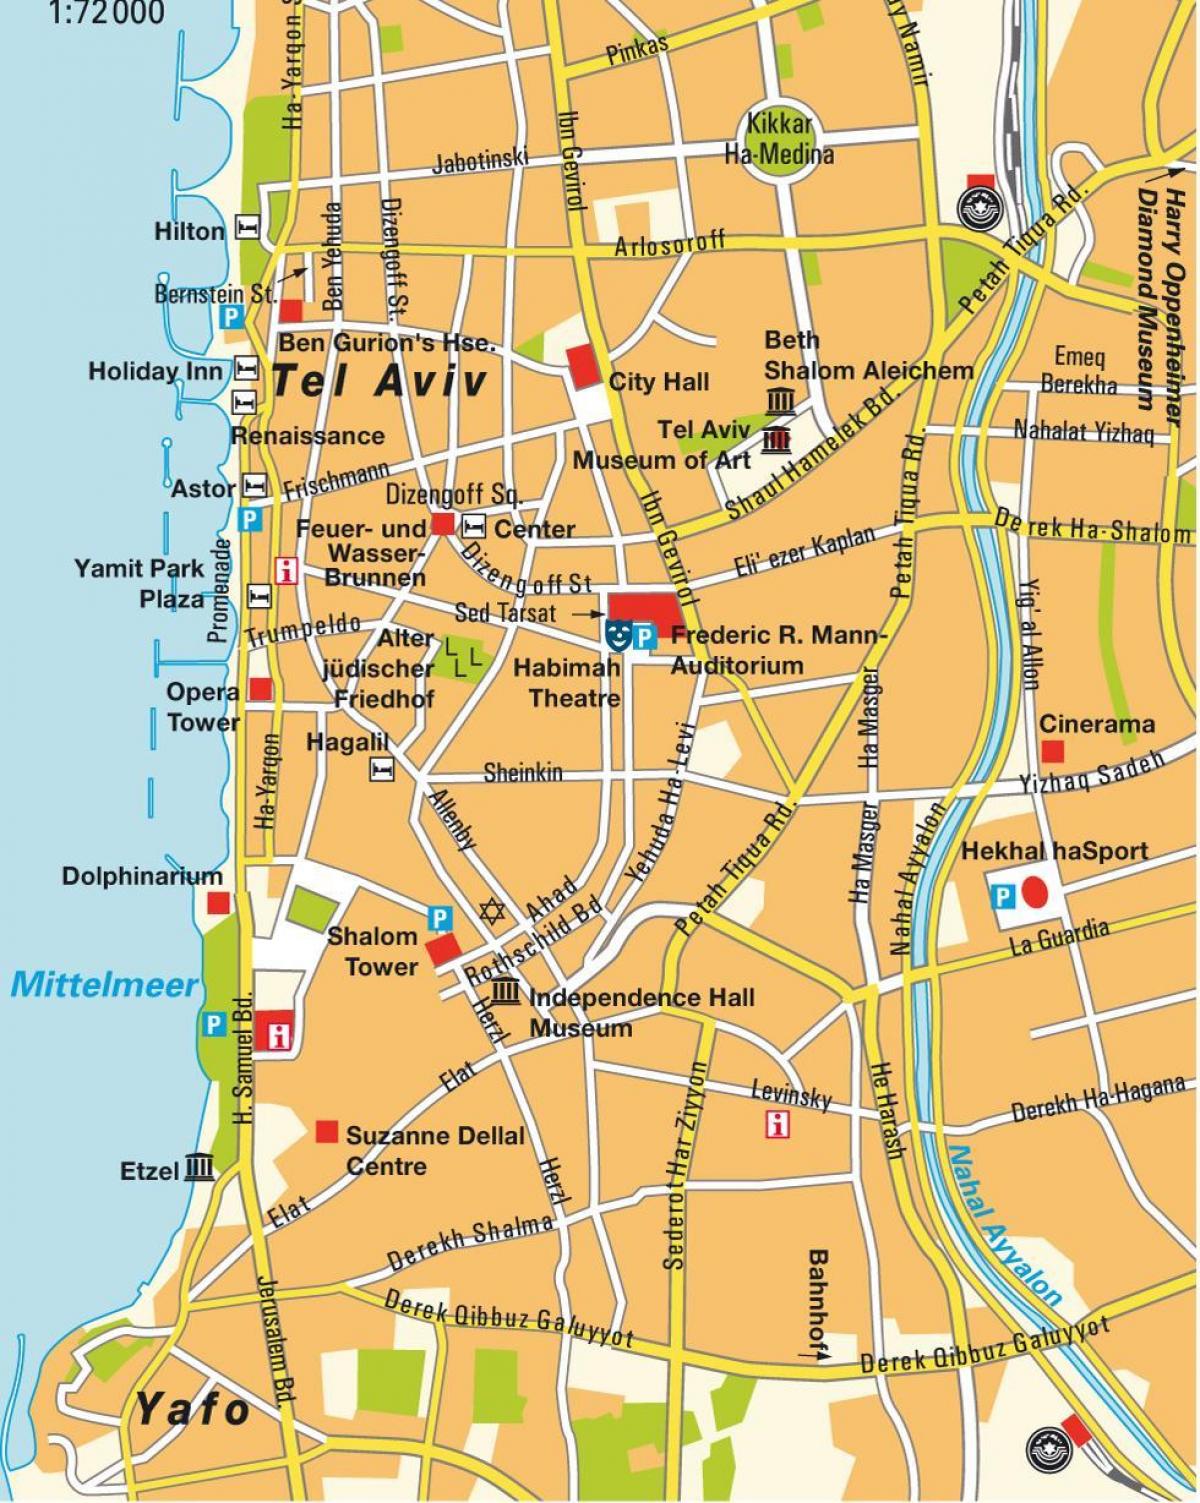 خريطة منطقة تل ابيب